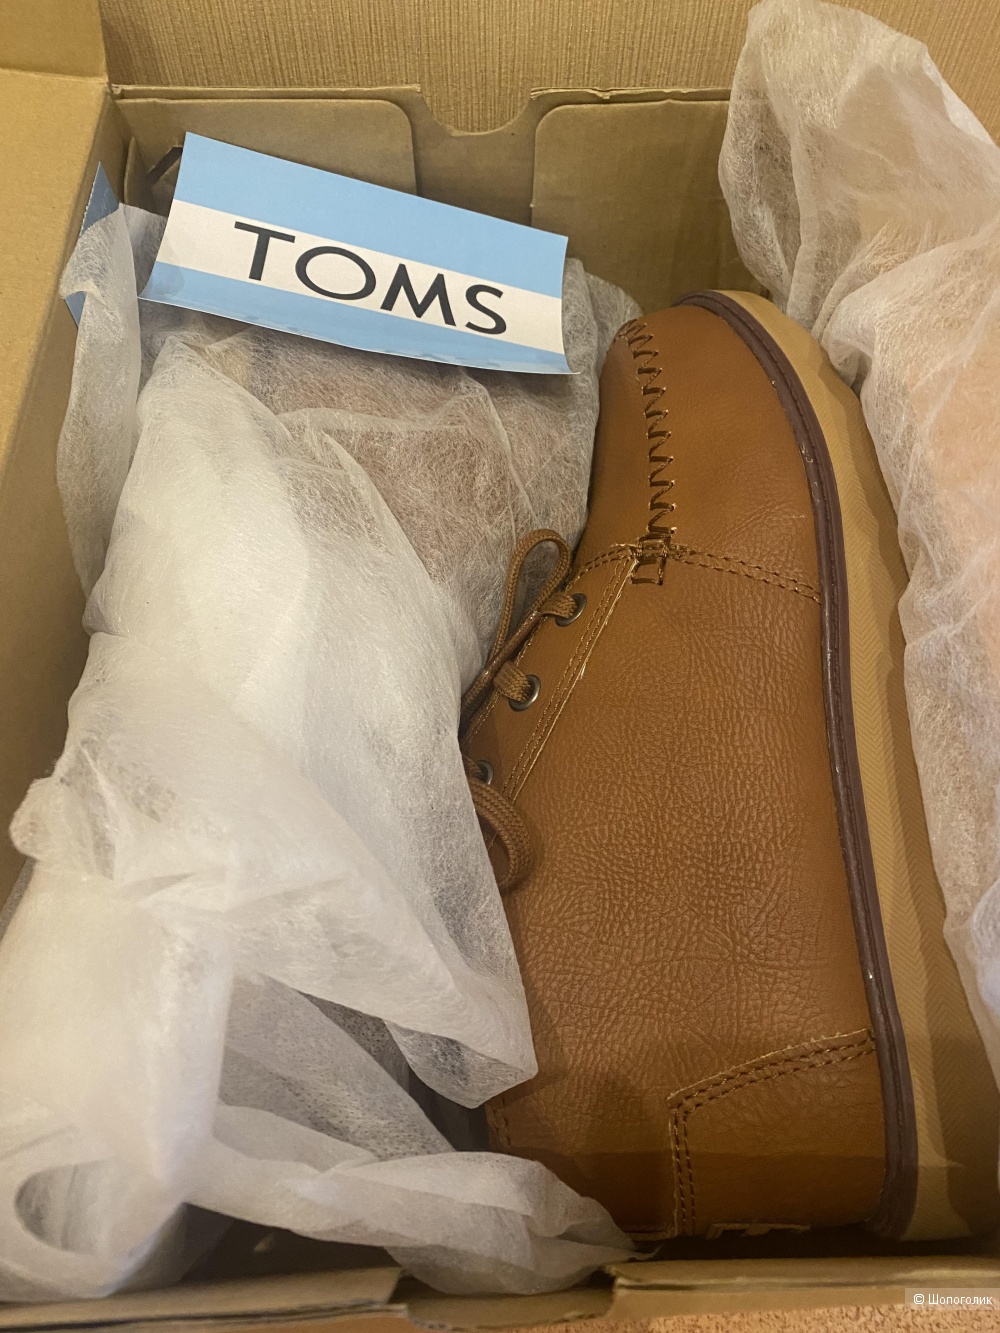 Ботинки кожаные TOMS для мальчика 36 размер